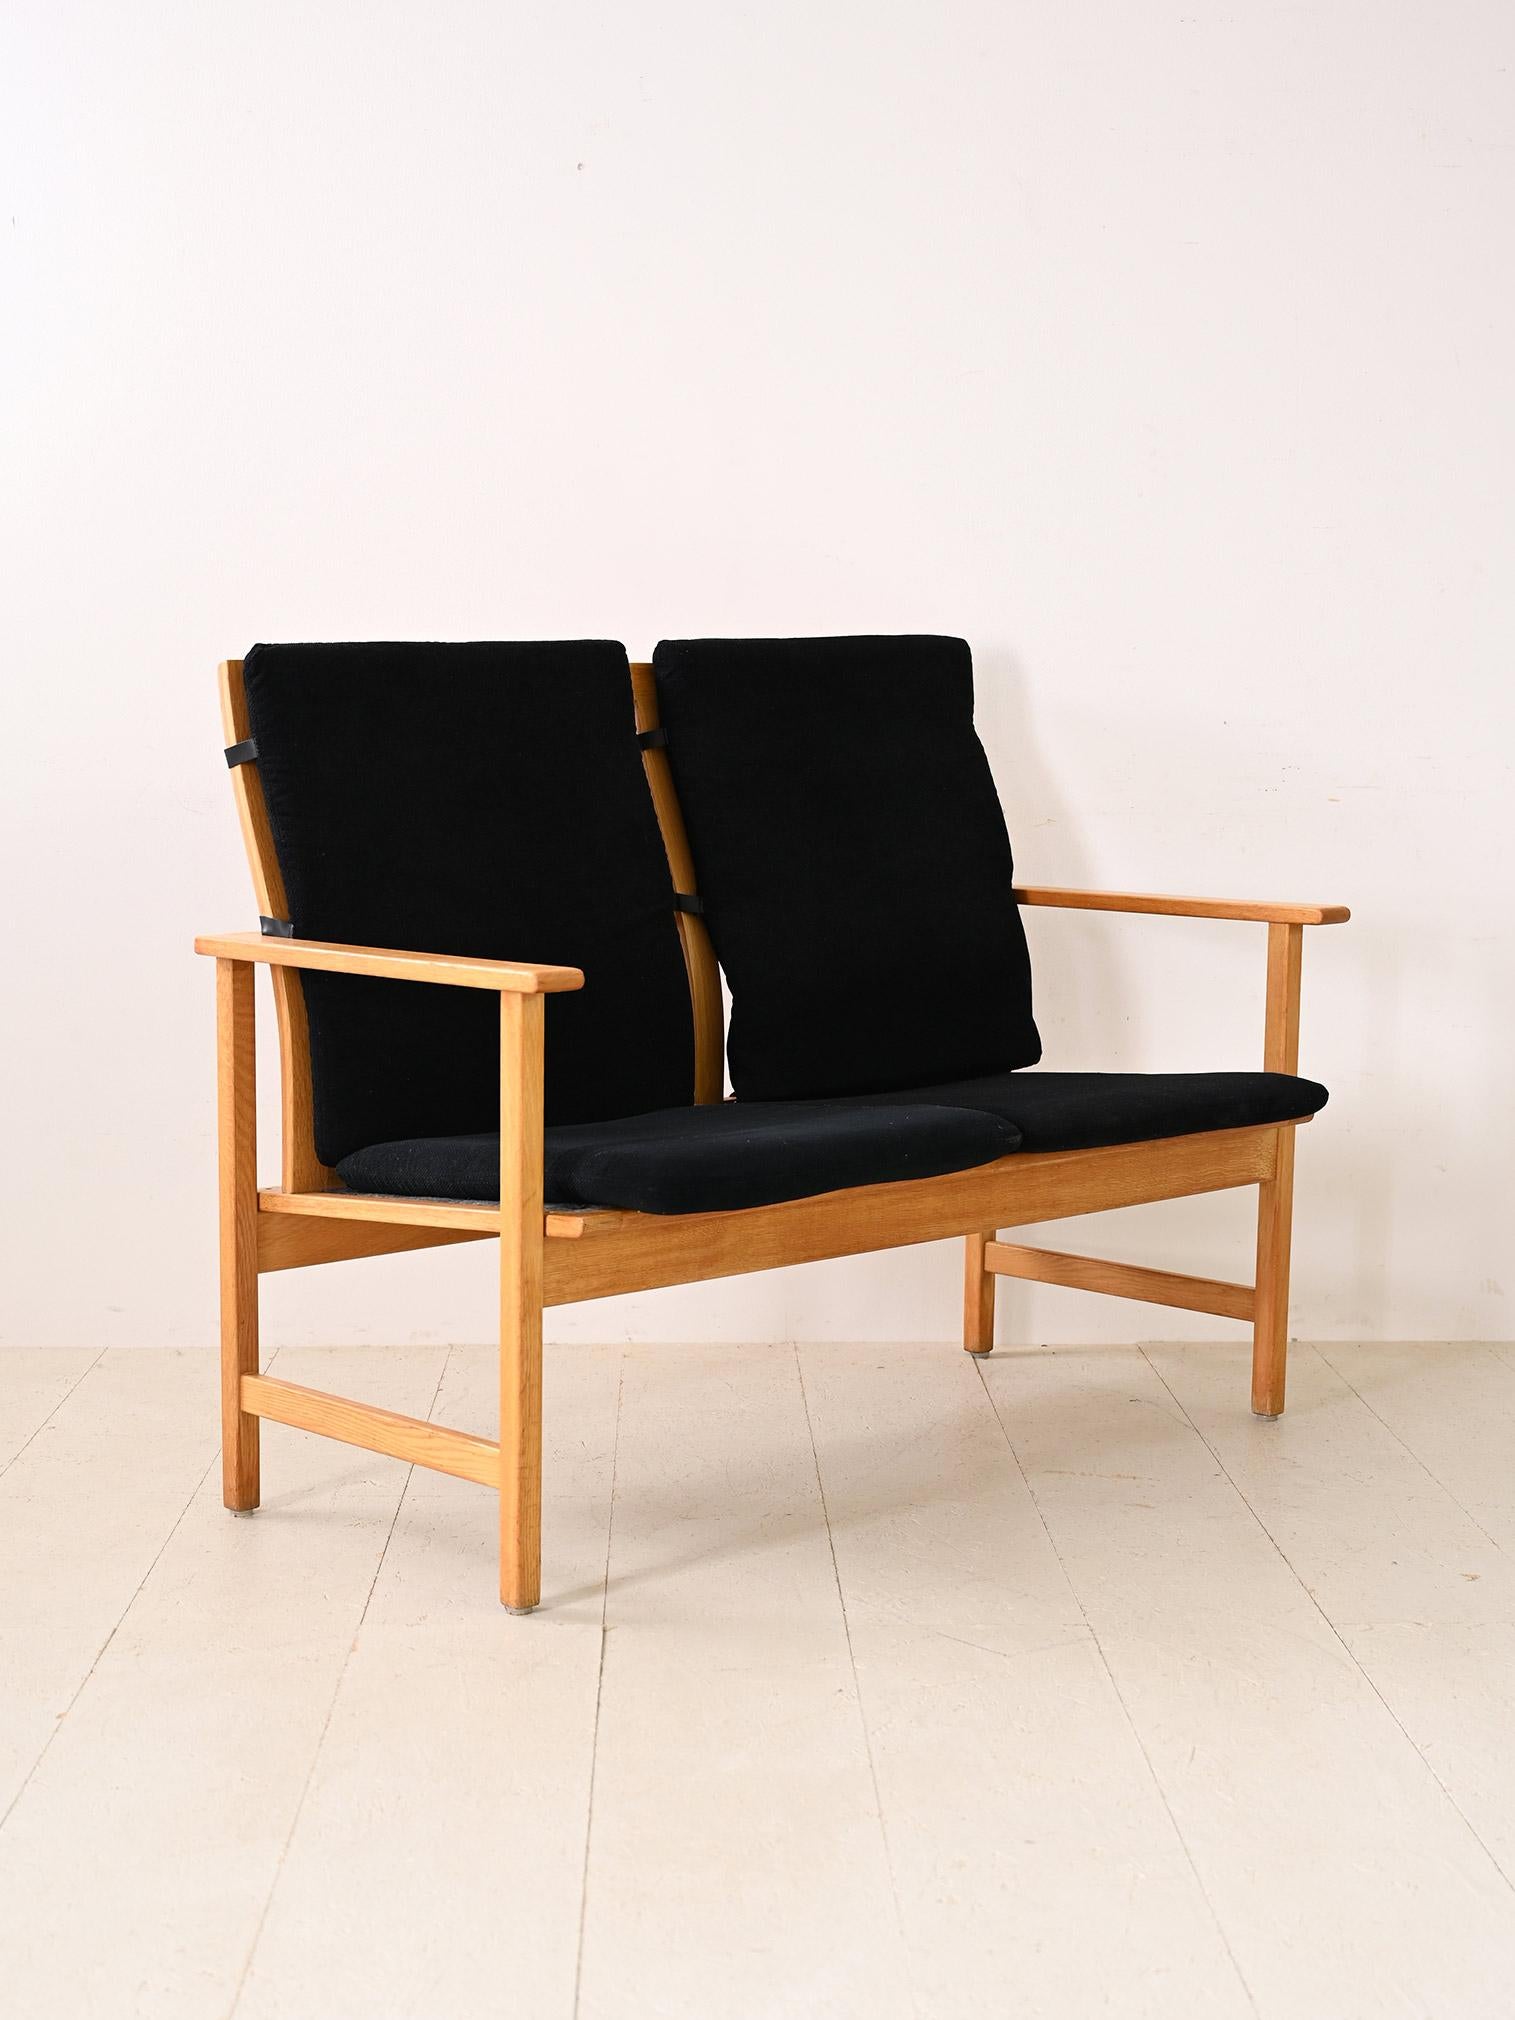 Zweisitziges Sofa mit Eichengestell. Ein originelles Stück skandinavischer Moderne, bestehend aus einem schlichten Holzrahmen mit Armlehnen und ergänzt durch die Original-Kissen auf Sitz und Rückenlehne. Die quadratischen, minimalistischen Linien